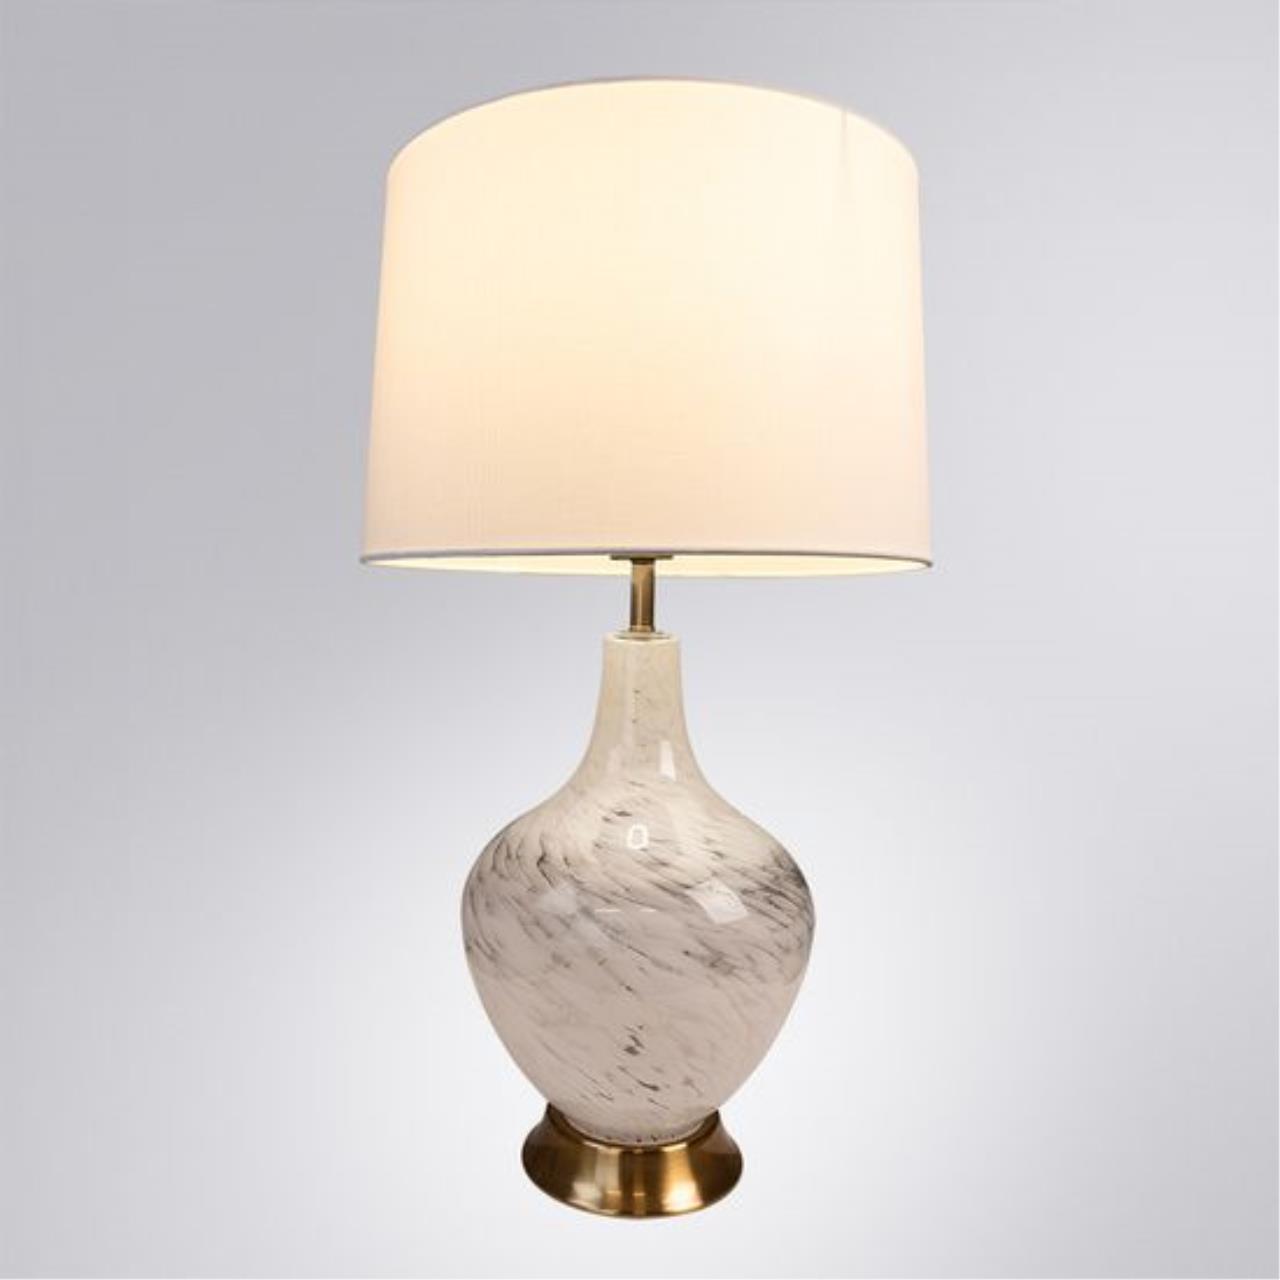 Интерьерная настольная лампа Arte lamp A5051LT-1PB